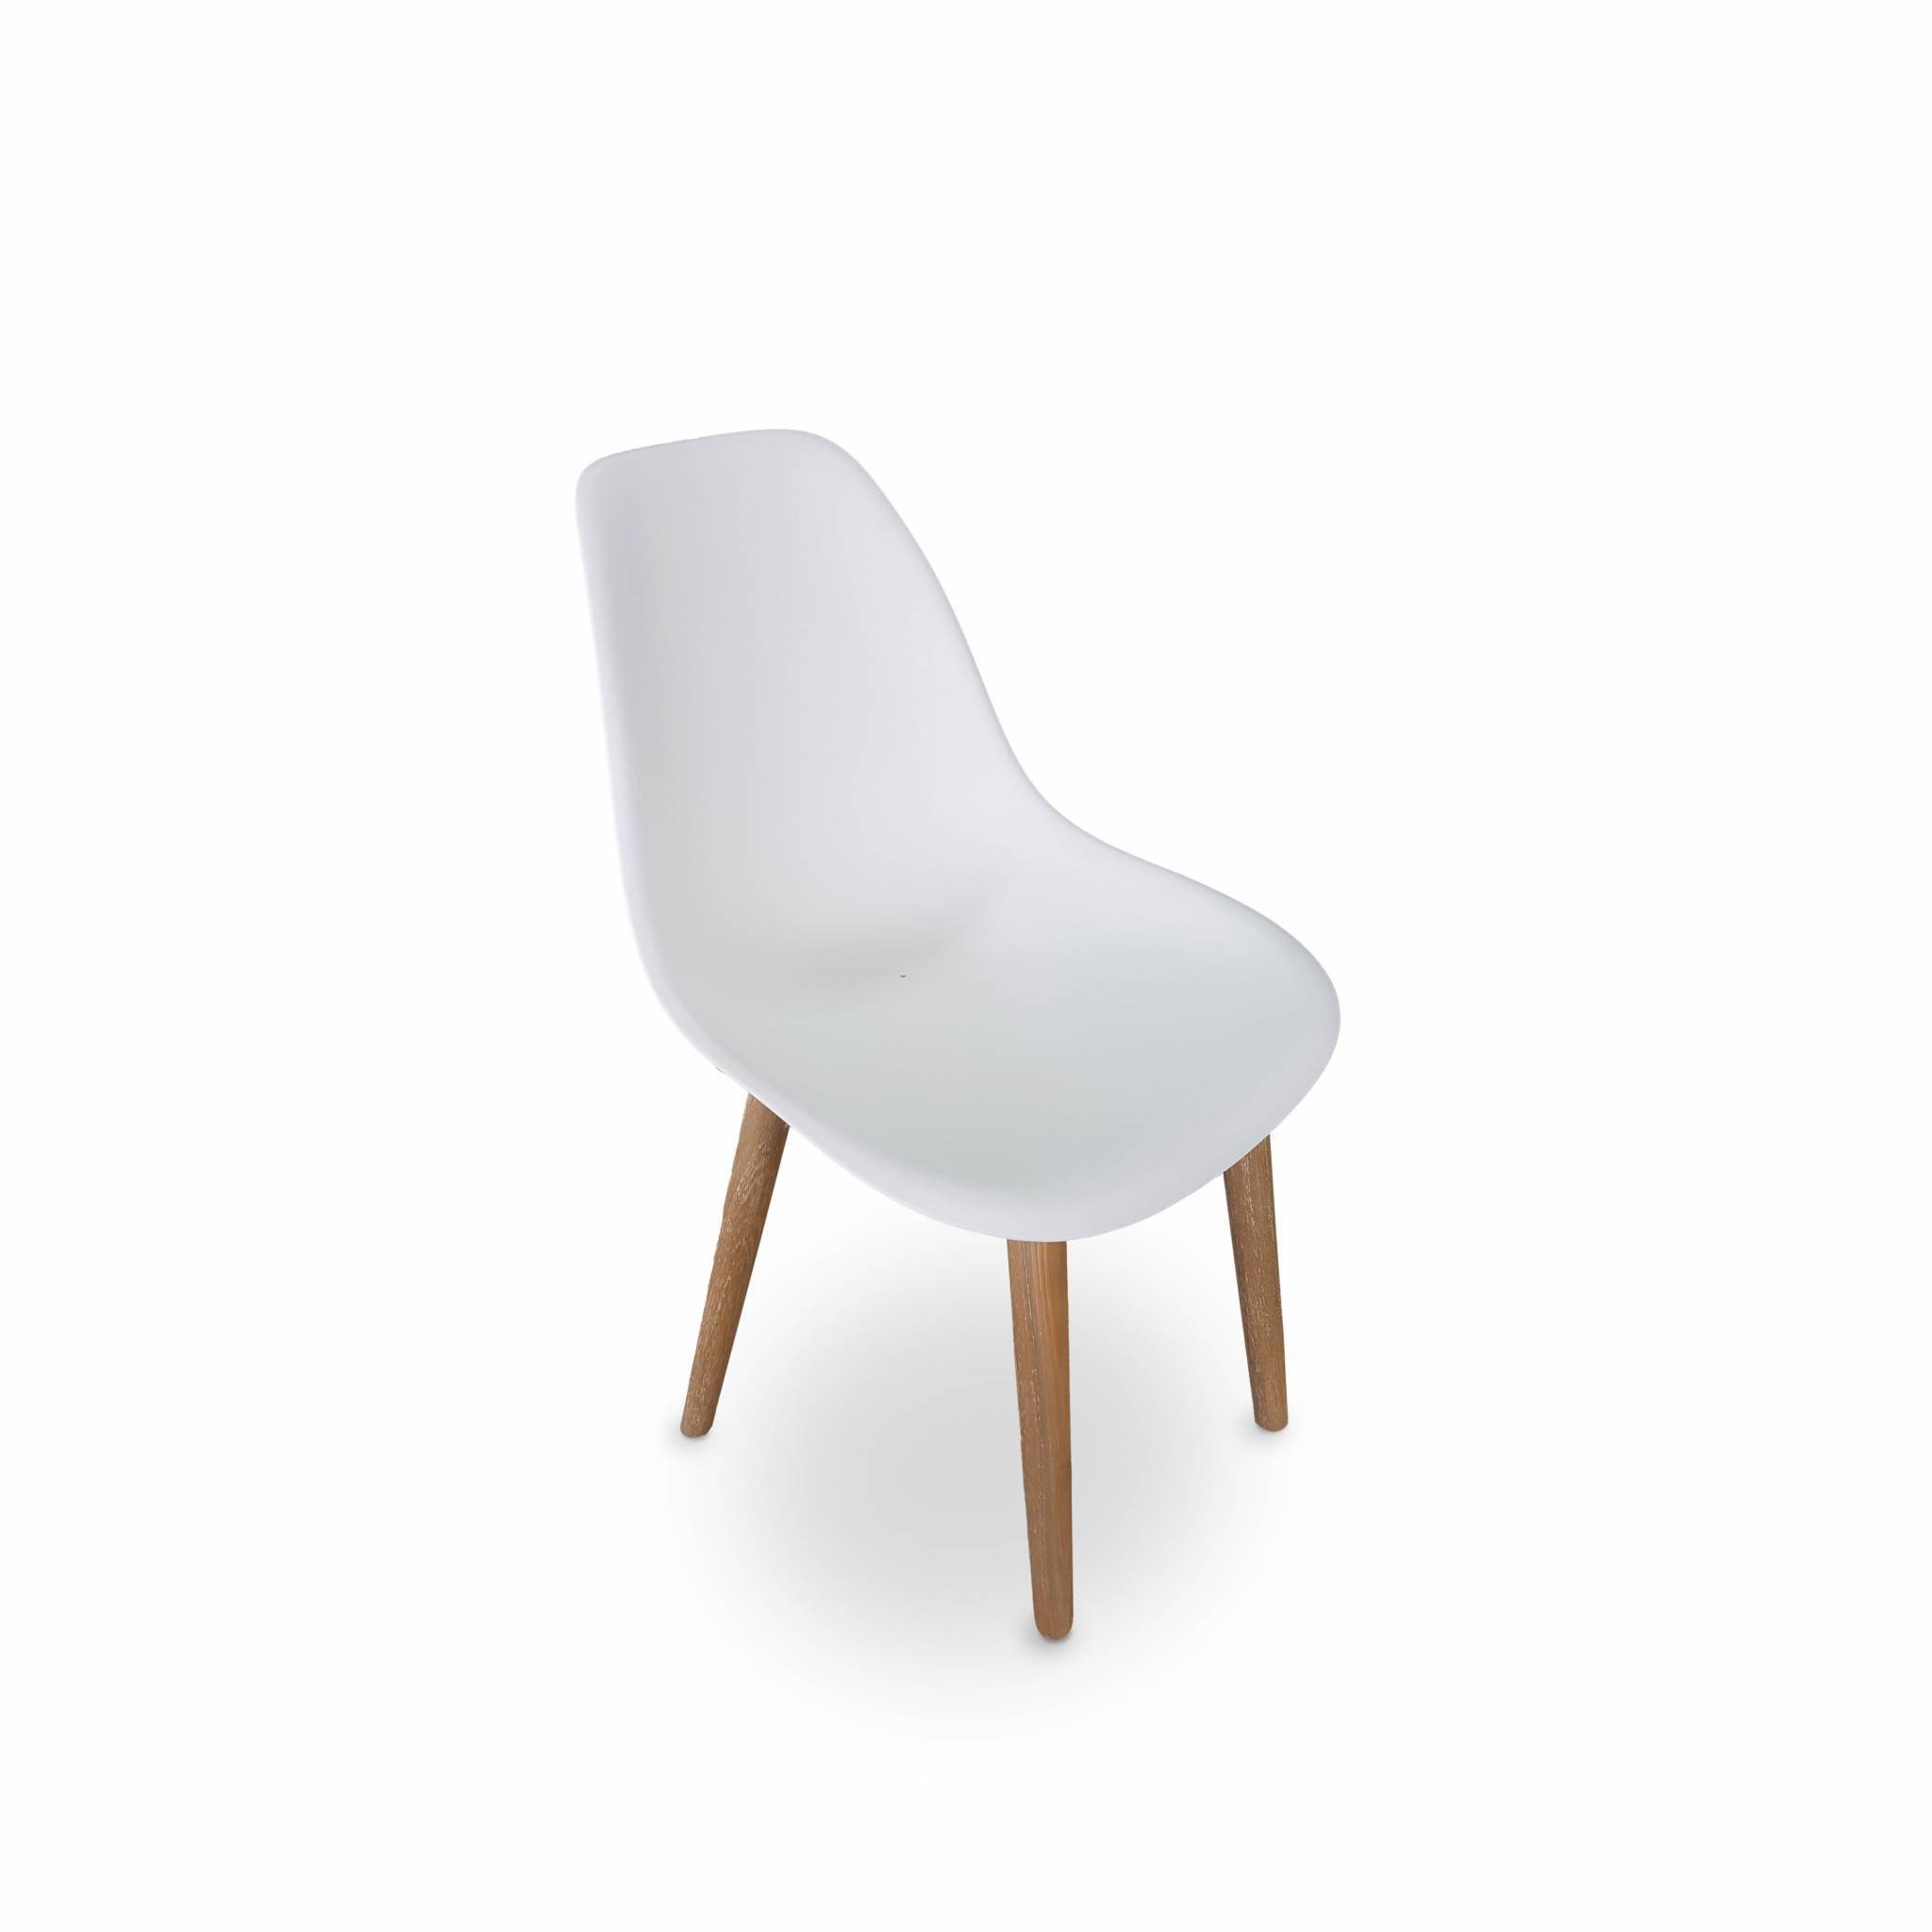 2er Set skandinavische Stühle Penida, aus Akazienholz und weißem Kunstharz gespritzt, innen/außen Photo2